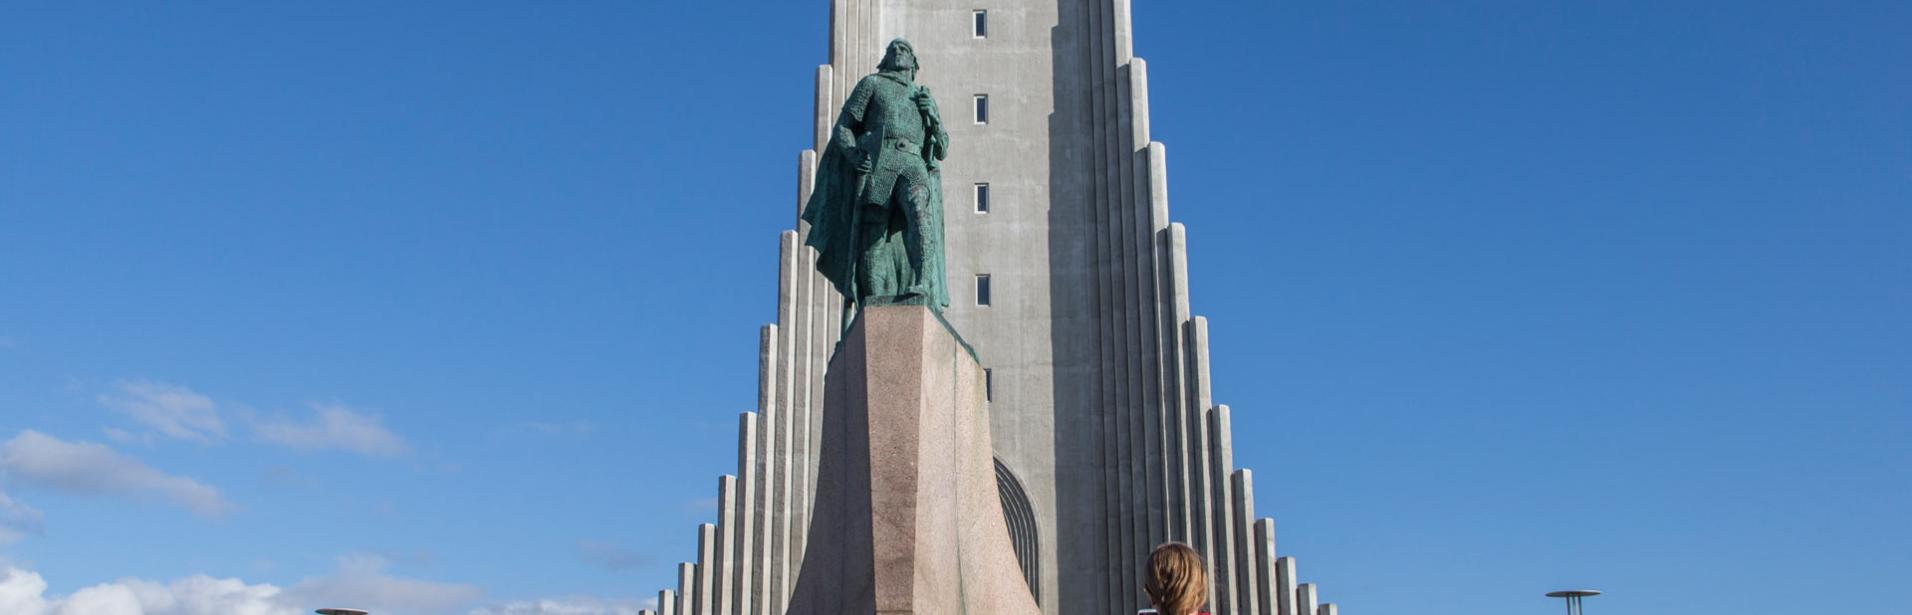 Hallgrimskirkja i Reykjavik Island.